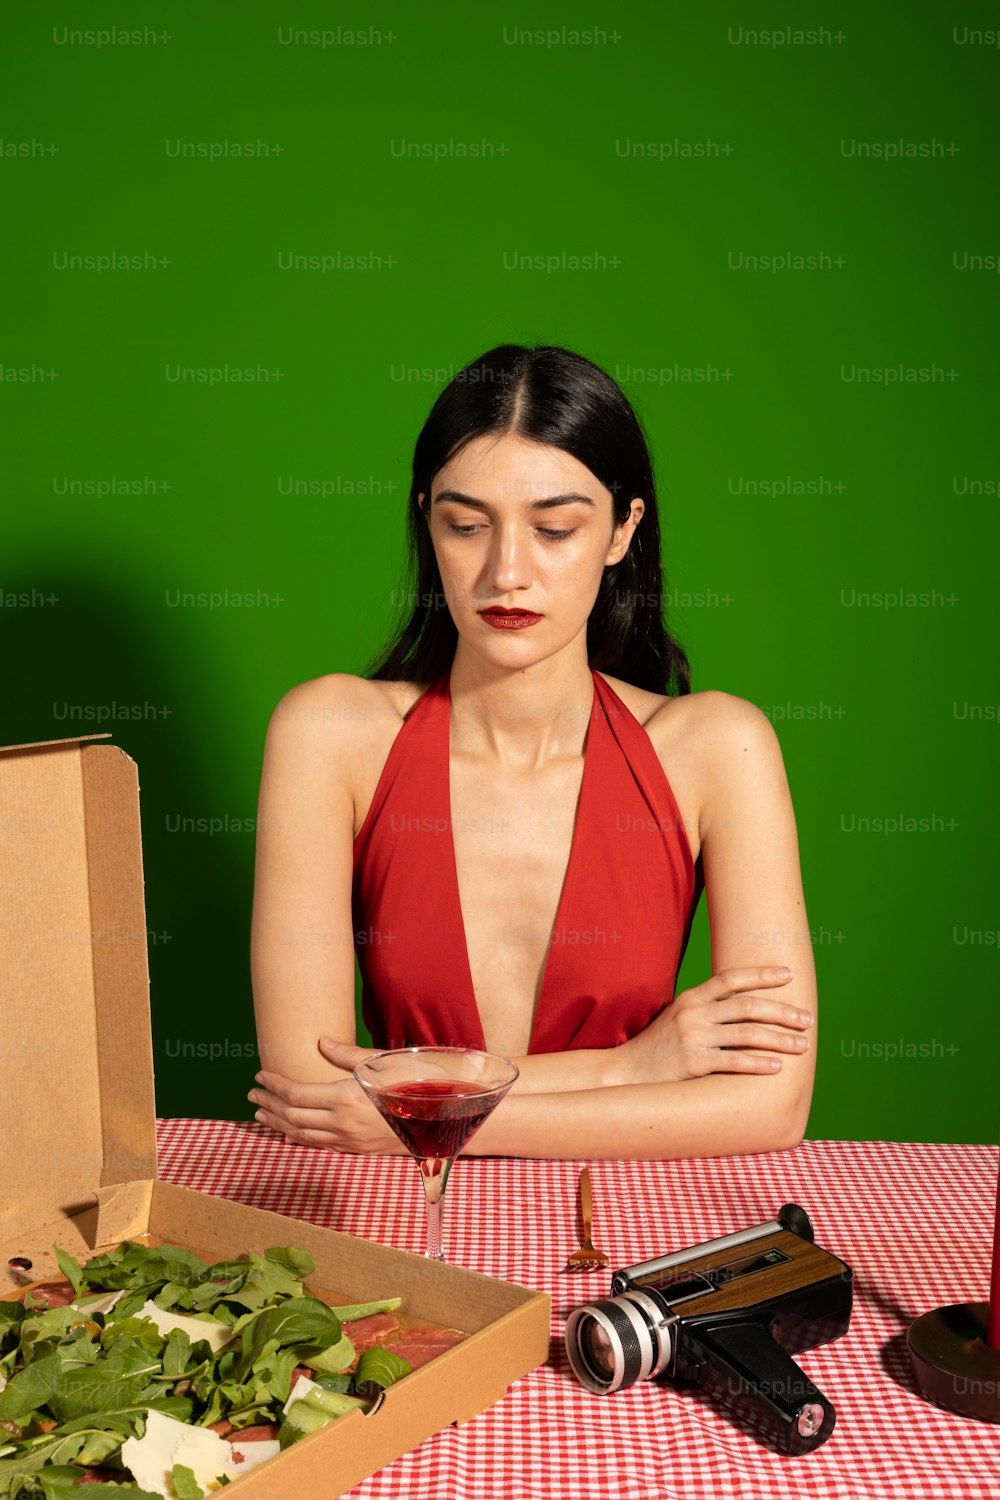 ピザの箱を持ってテーブルに座っている女性